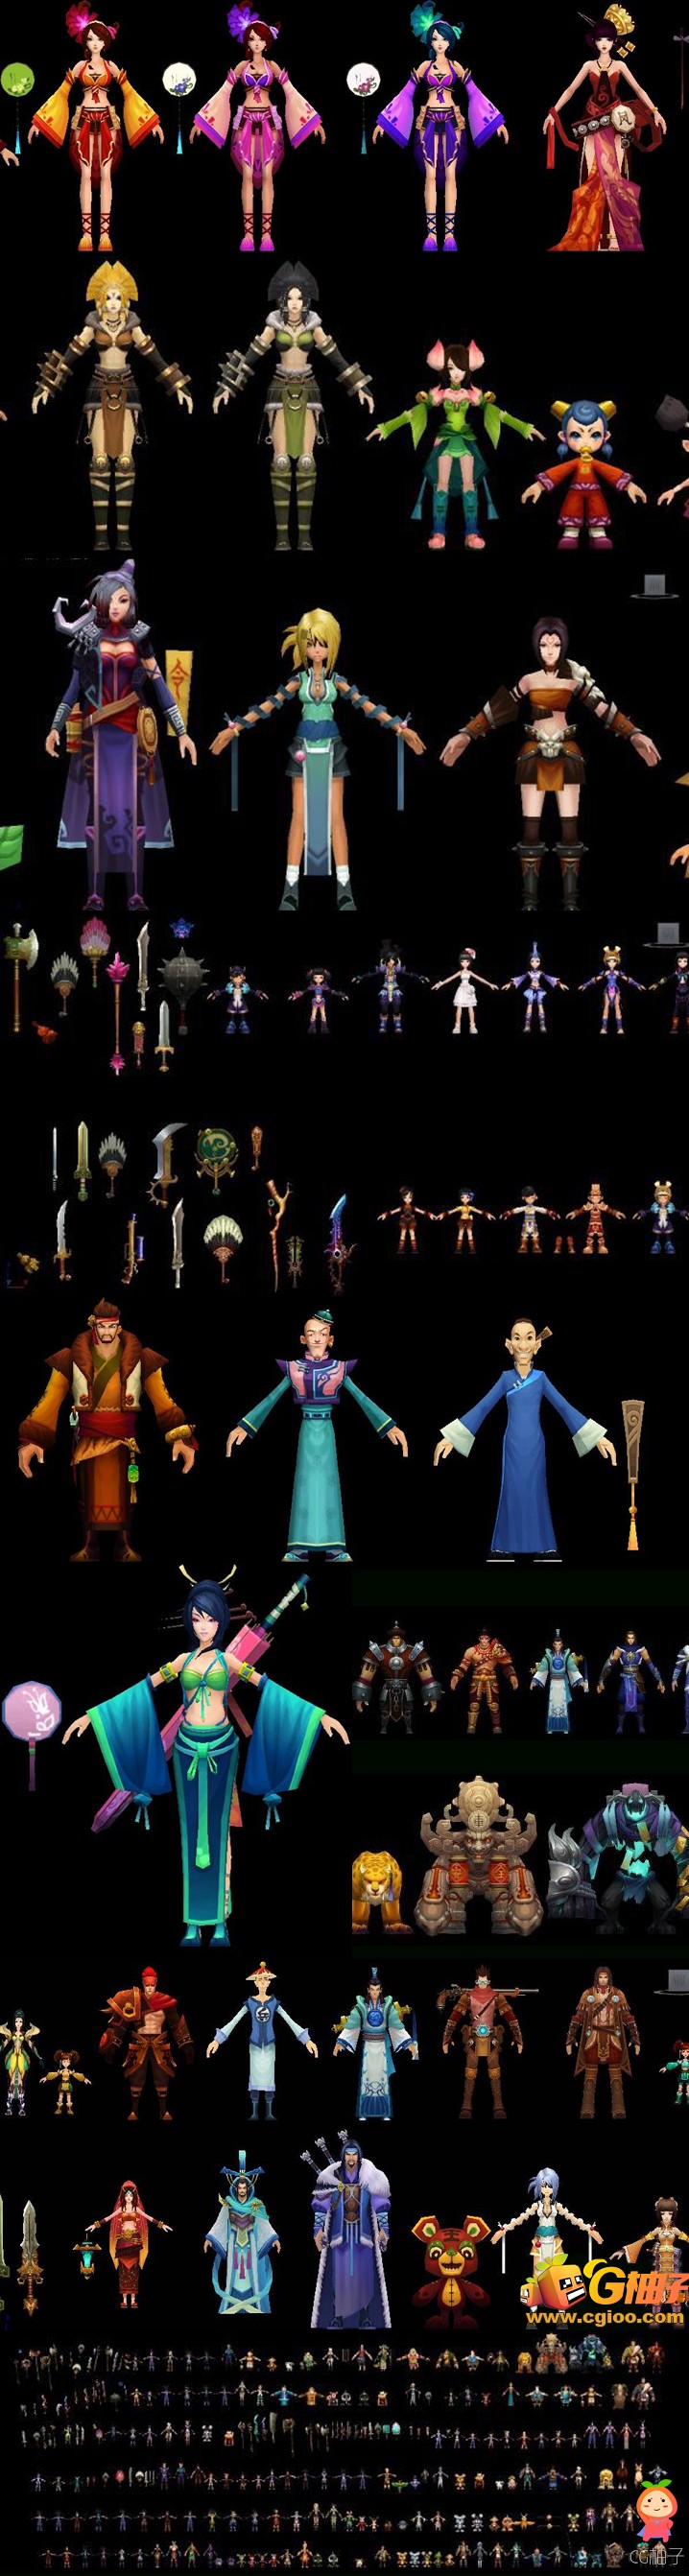 《鹿鼎记》游戏角色模型合集下载,卡通人物模型,3D美术资源